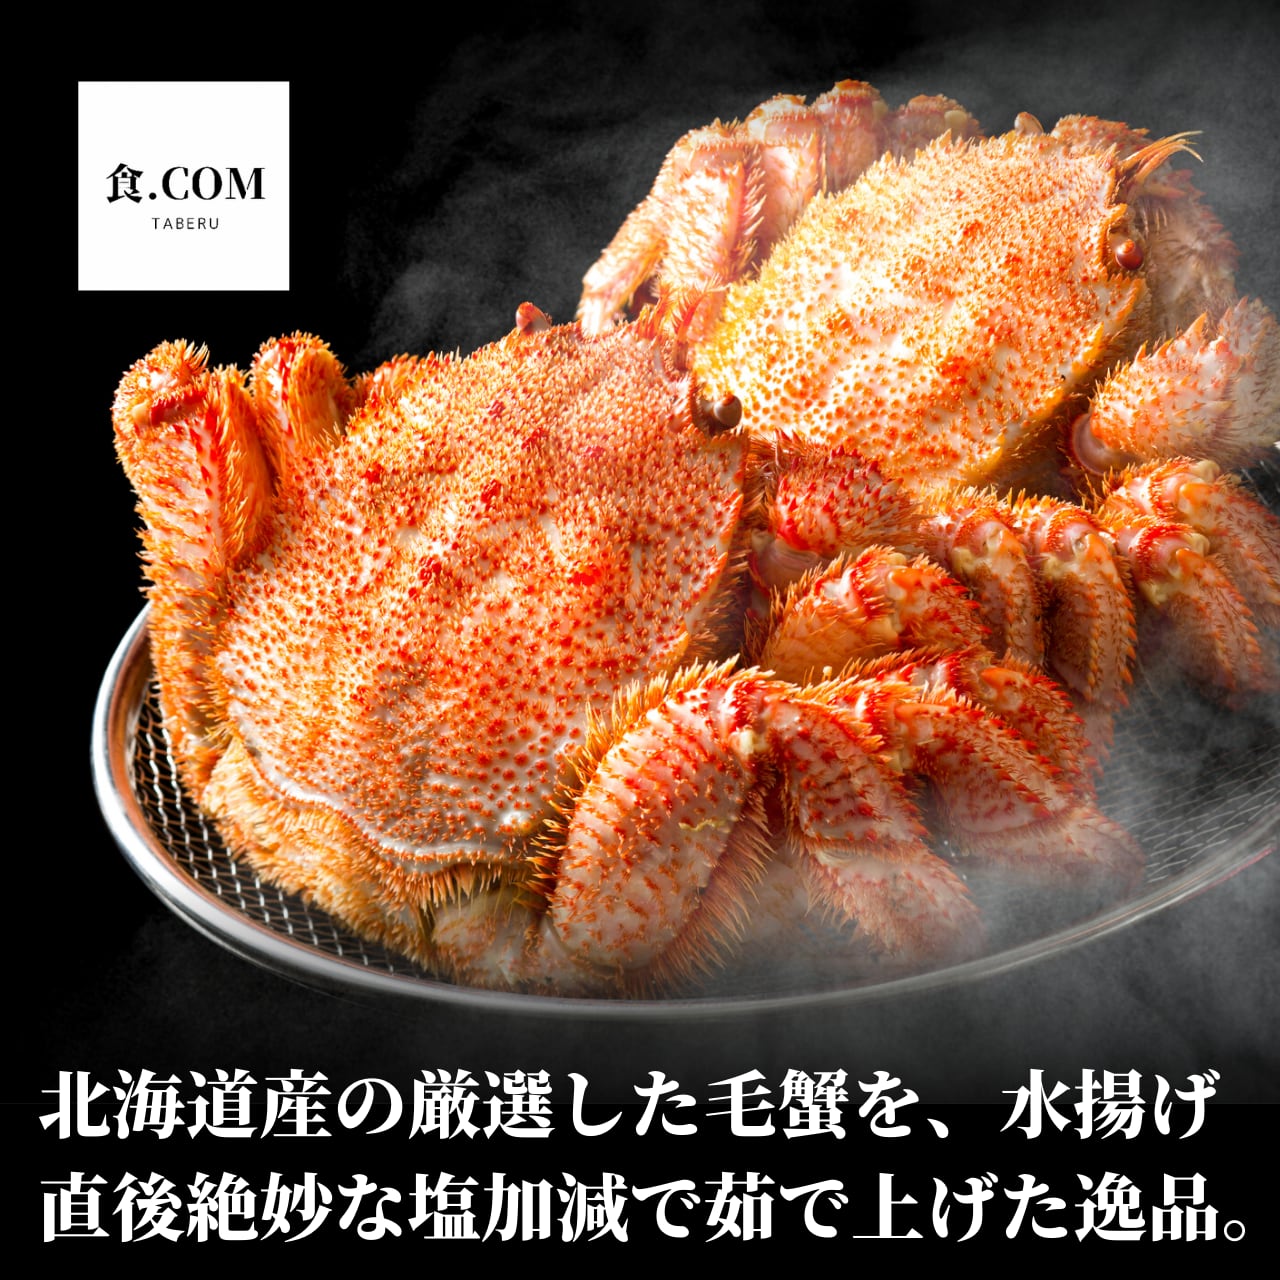 北海道産毛蟹1尾350g×2尾〈ボイル冷凍〉